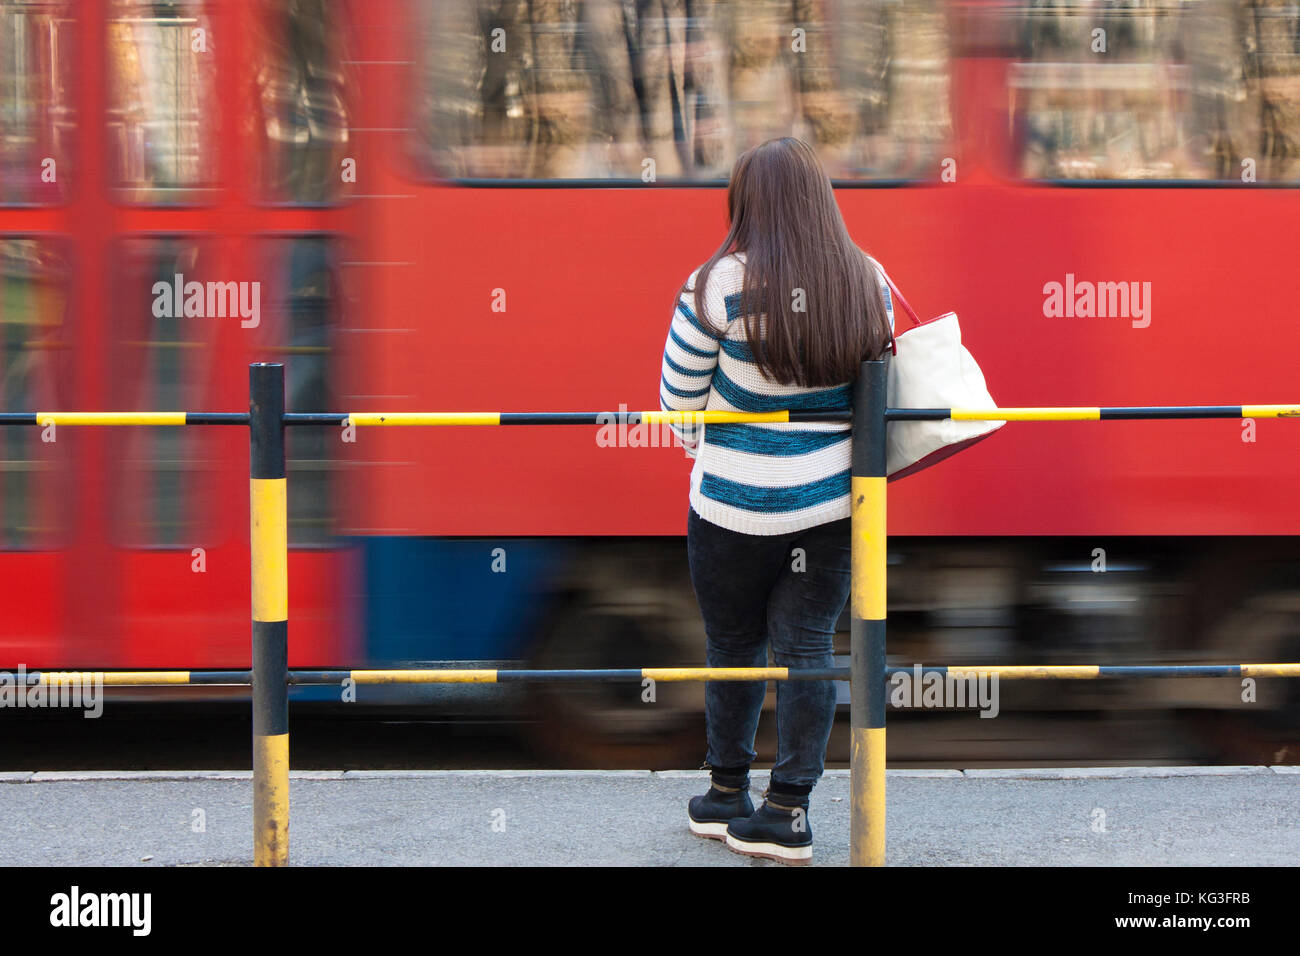 Belgrad, Serbien - 21. März 2017: Eine junge Frau - teenage Mädchen an Bus- und Straßenbahn-Haltestelle und Stadtverkehr in motion blur warten Stockfoto